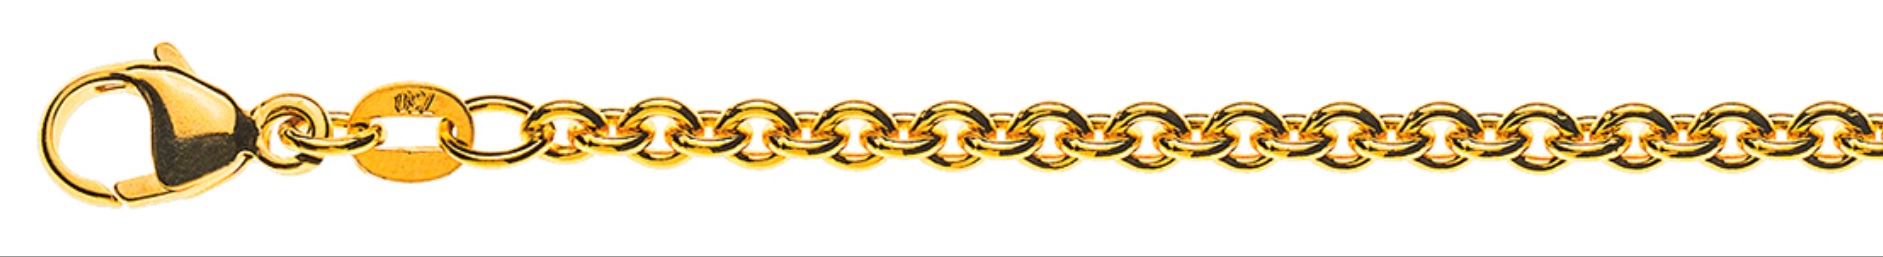 AURONOS Prestige Bracelet ancre ronde or jaune 18 carats 19cm 3.1mm